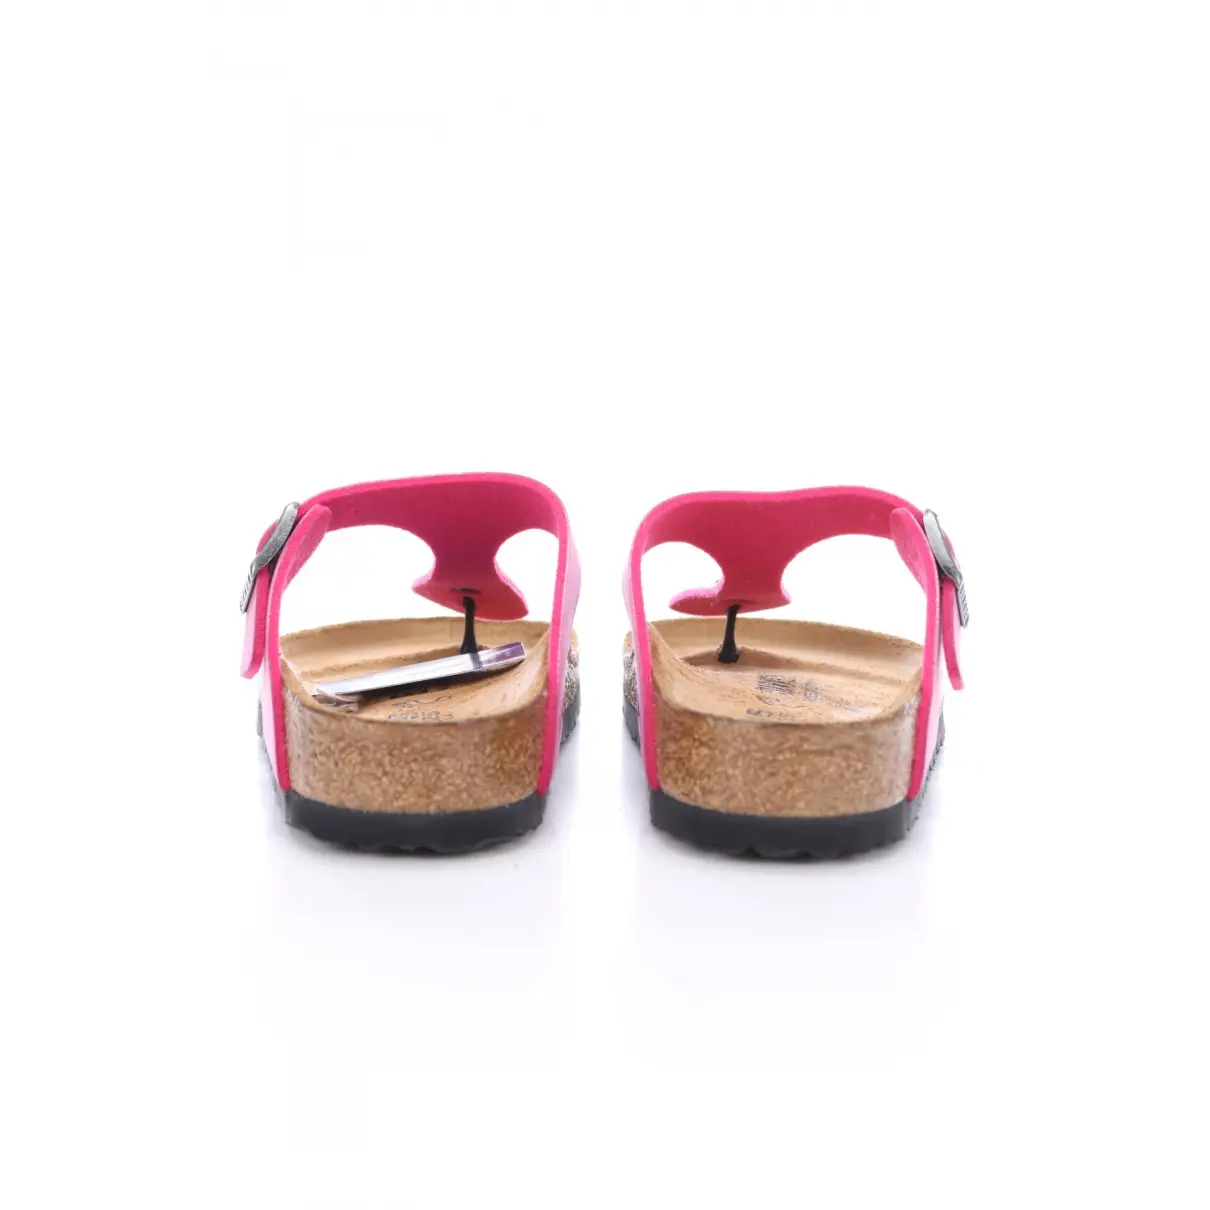 Buy Birkenstock Cloth sandals online